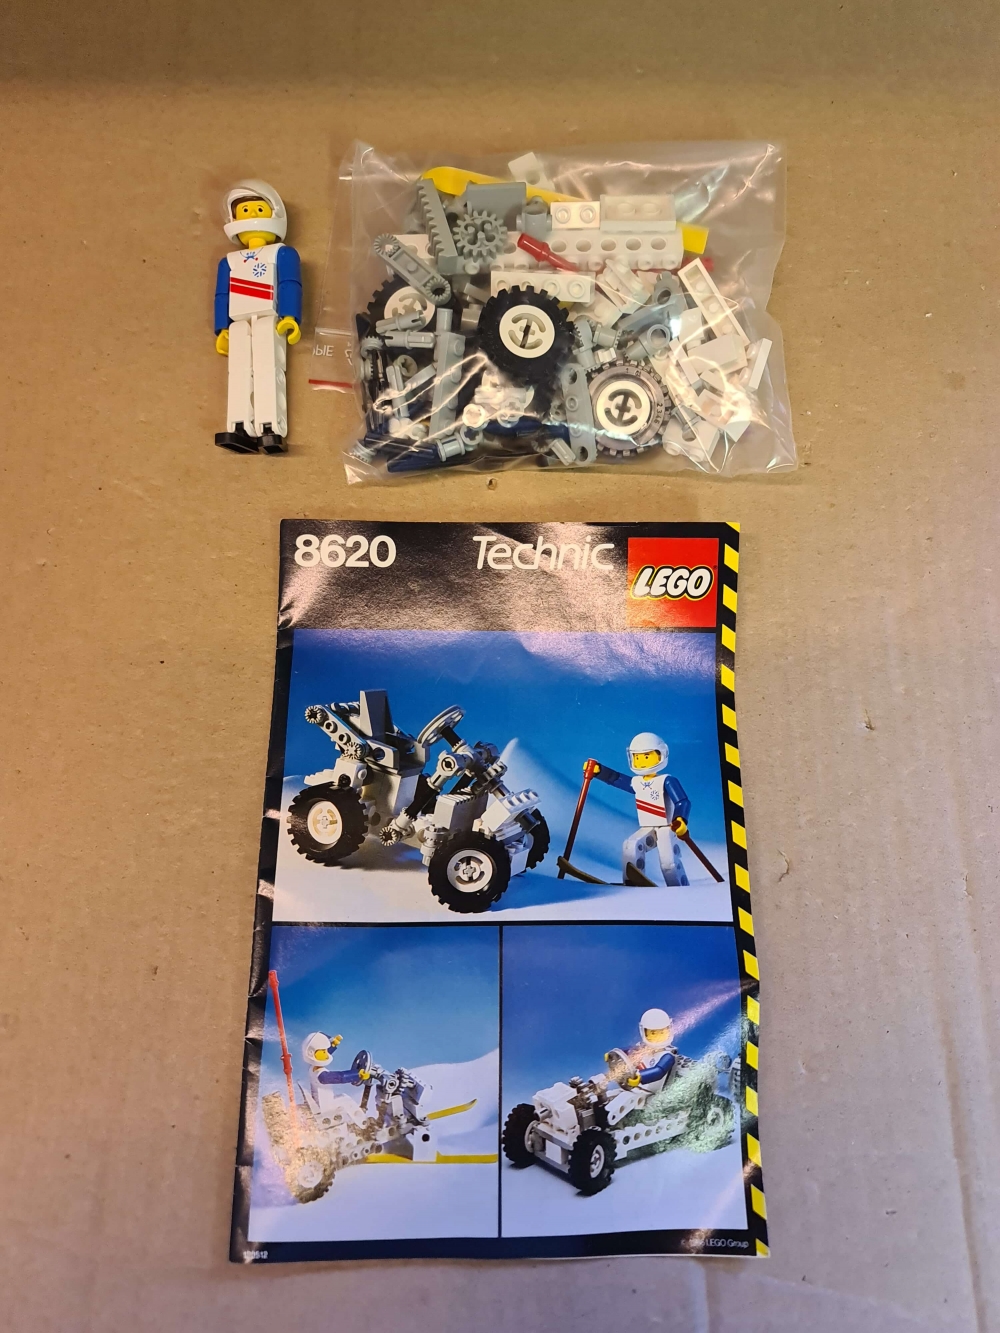 Sett 8620 fra Lego Technic serien.
Nydelig sett. Ingen misfarging.
Komplett med manual.